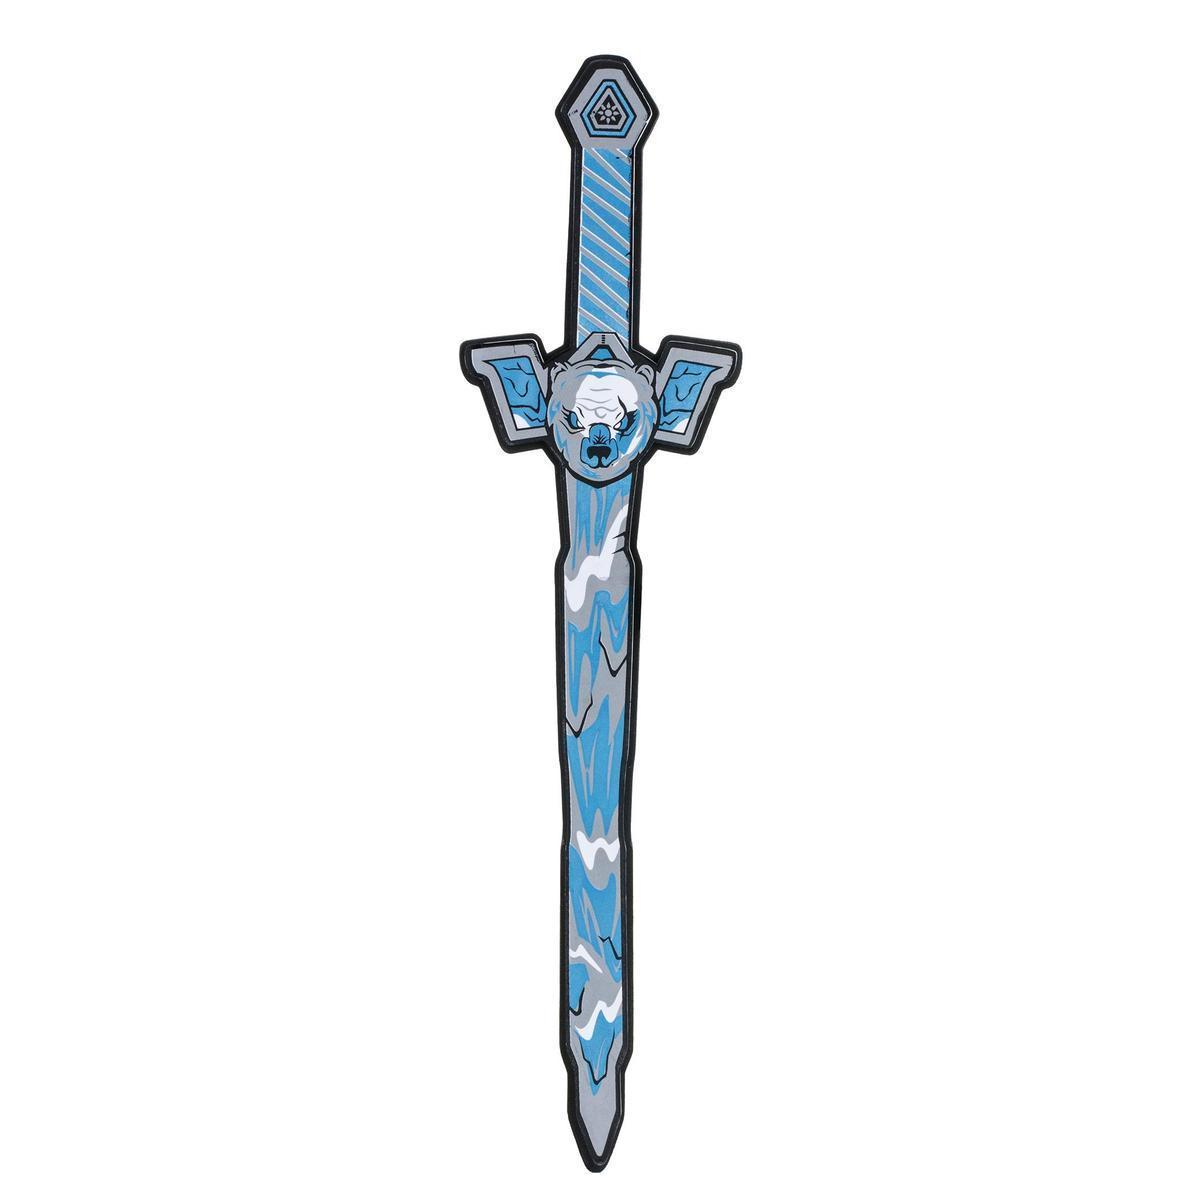 Épée jouet - L 53 x H 1.5 x l 13 cm - Bleu